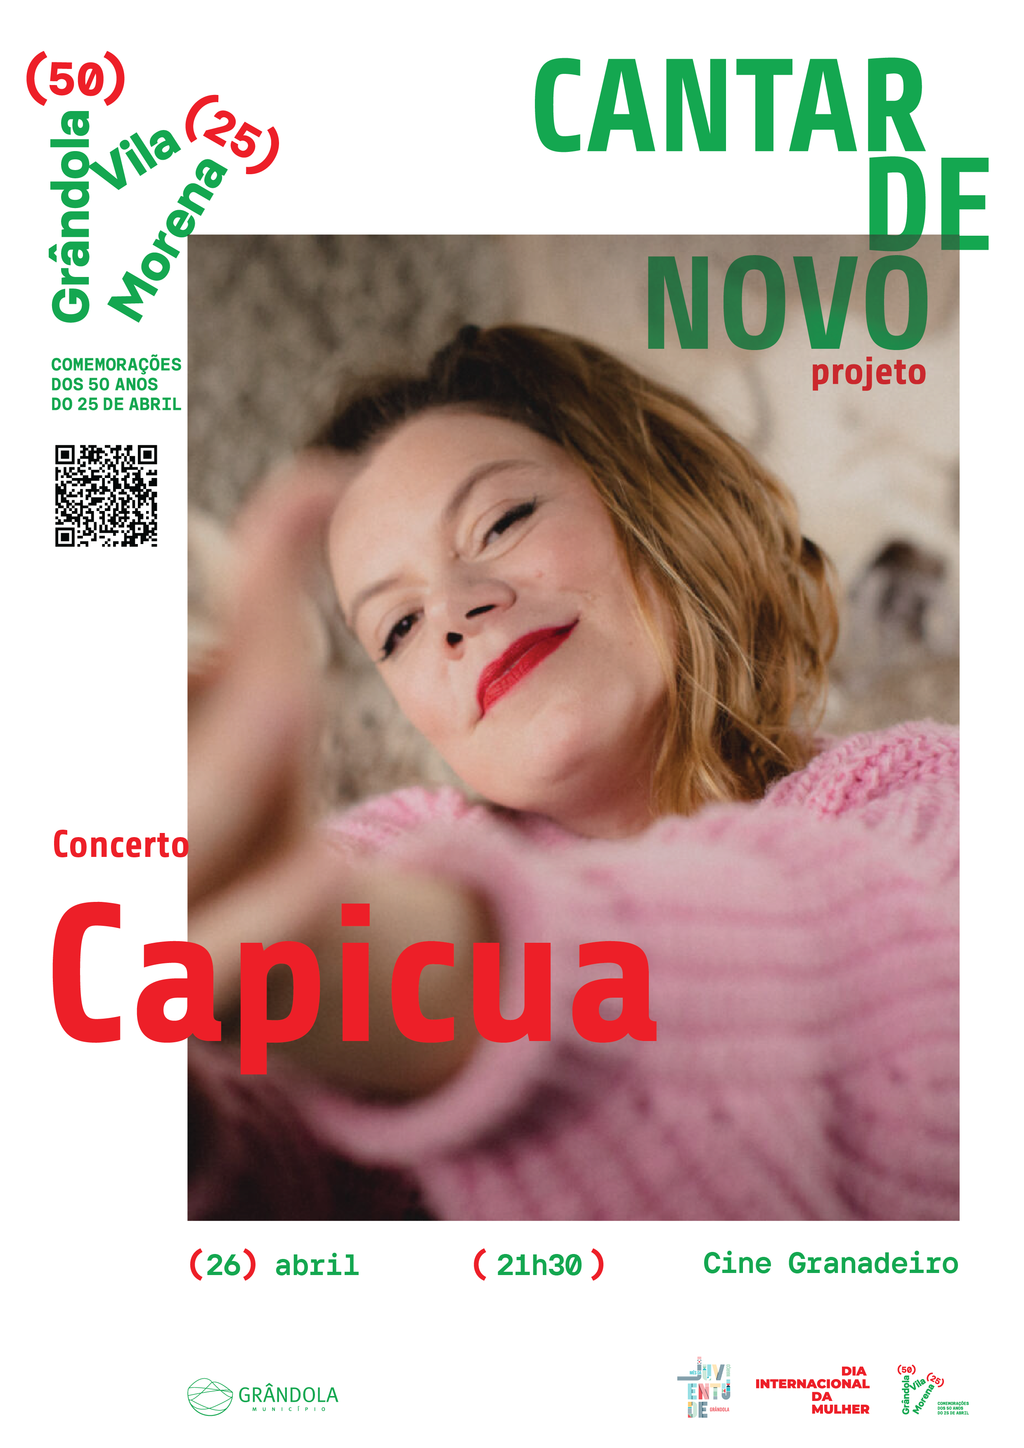 MÚSICA | Concerto Capicua - Projeto Cantar de Novo